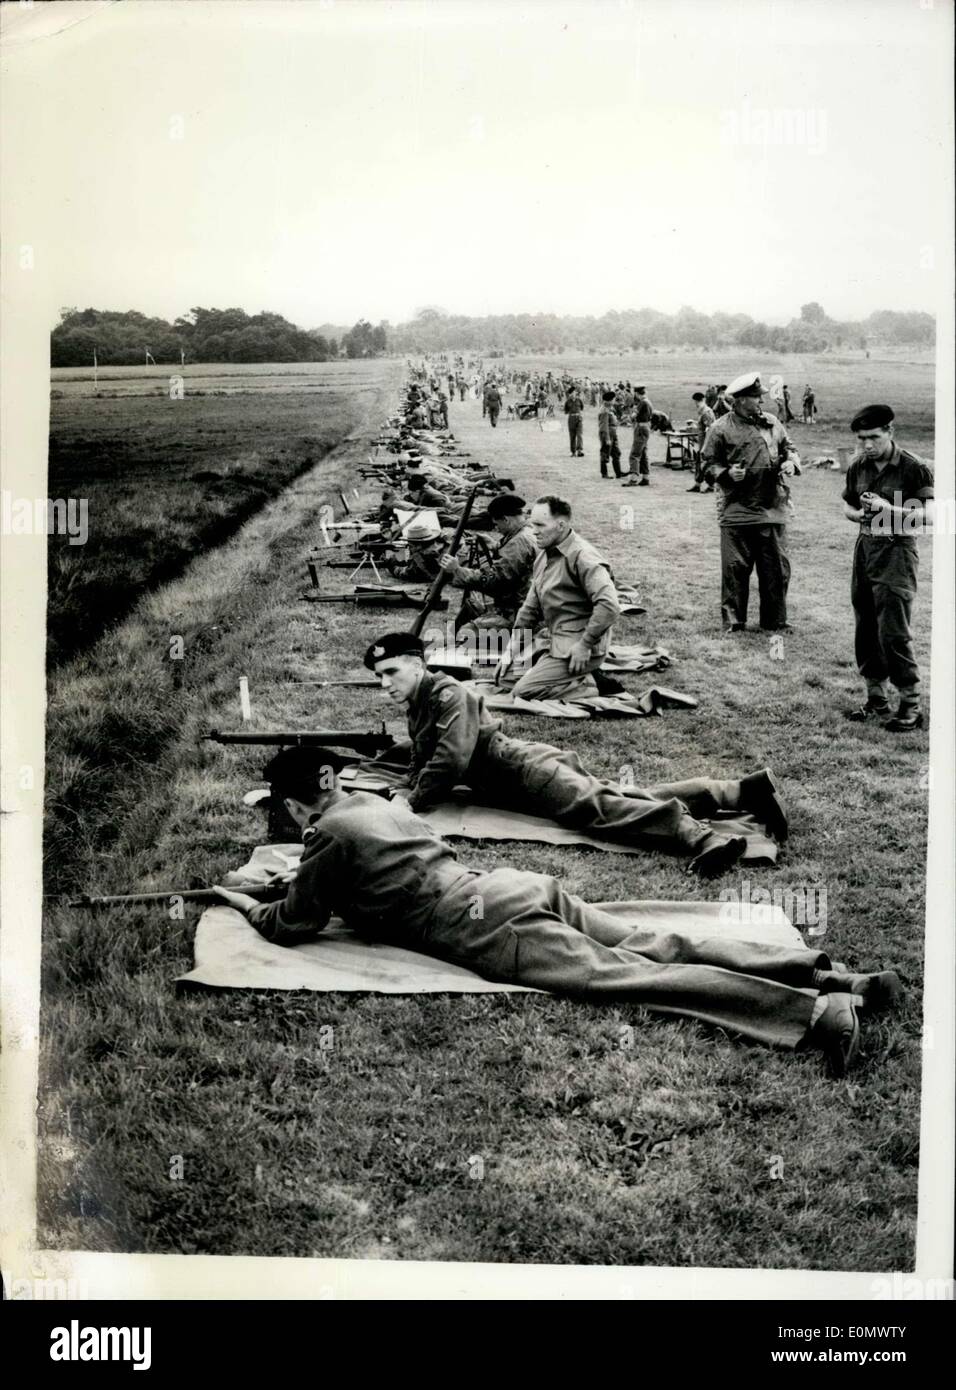 Lug. 09, 1956 - Le riprese a Bisley: la 87a riunione annuale della National Rifle Association, ha iniziato oggi a Bisley. Mostra fotografica di vista generale dei concorrenti a Bisley oggi. Foto Stock